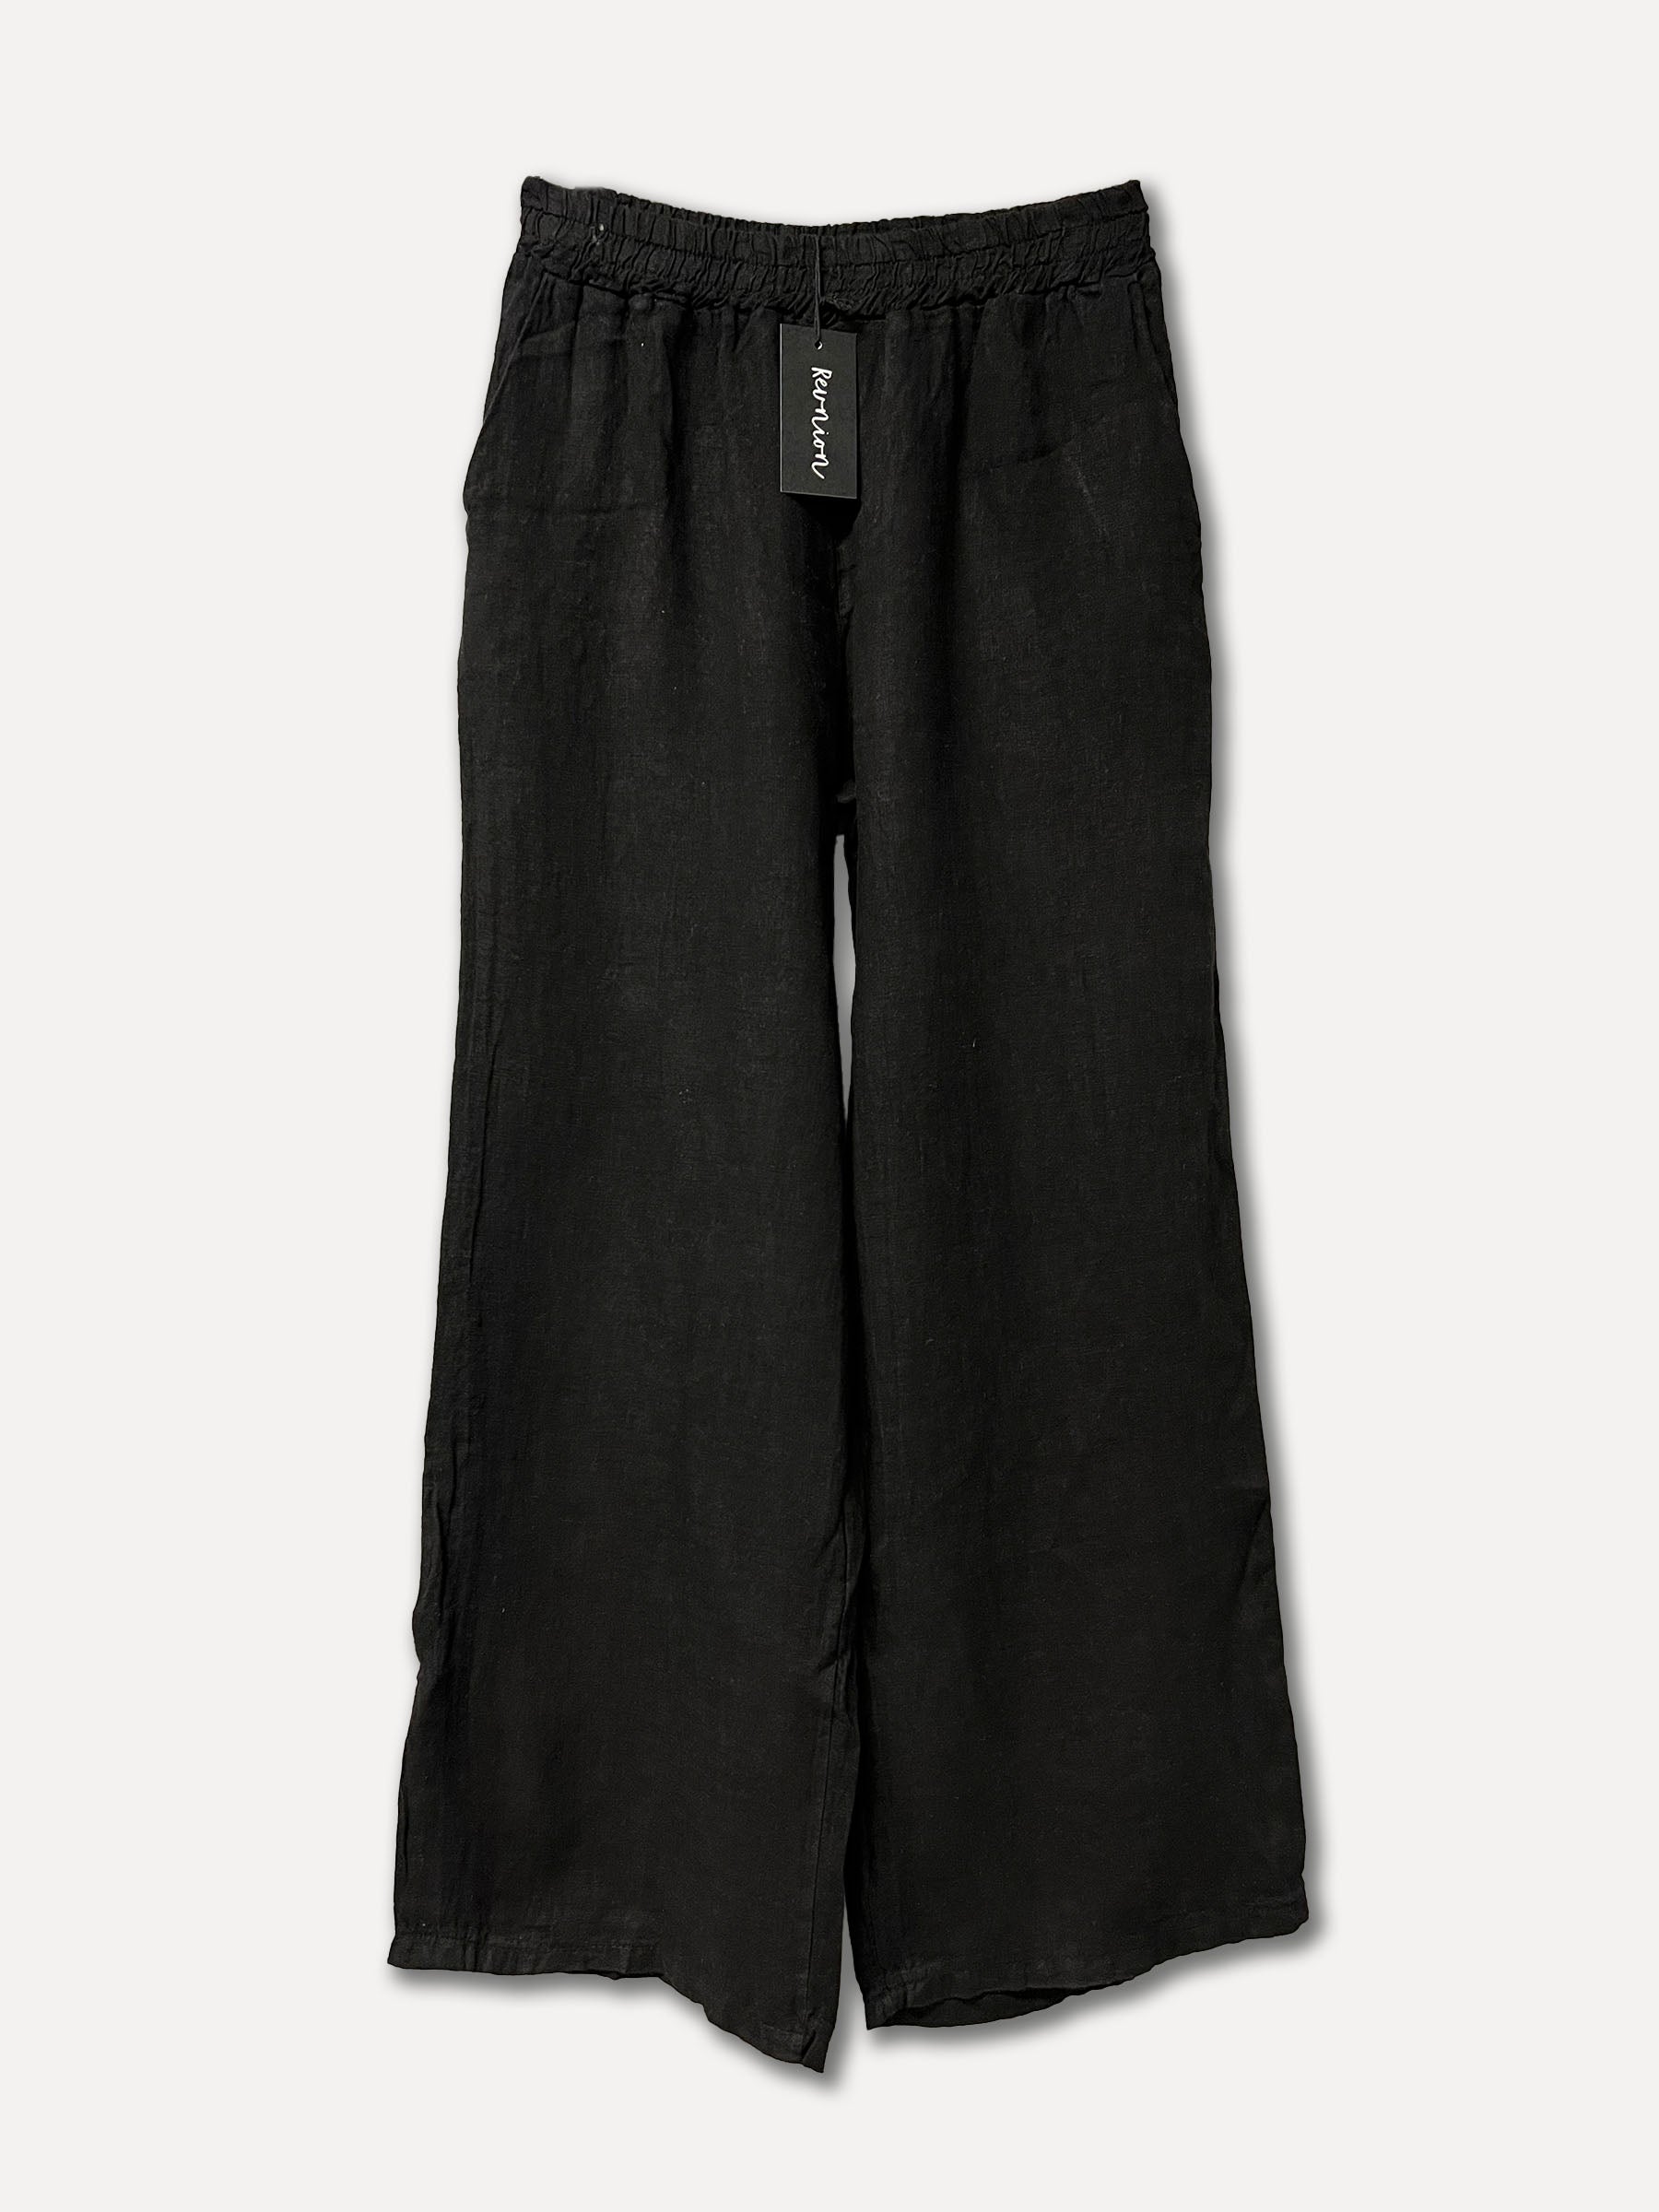 Lerici Linen Pants, Black